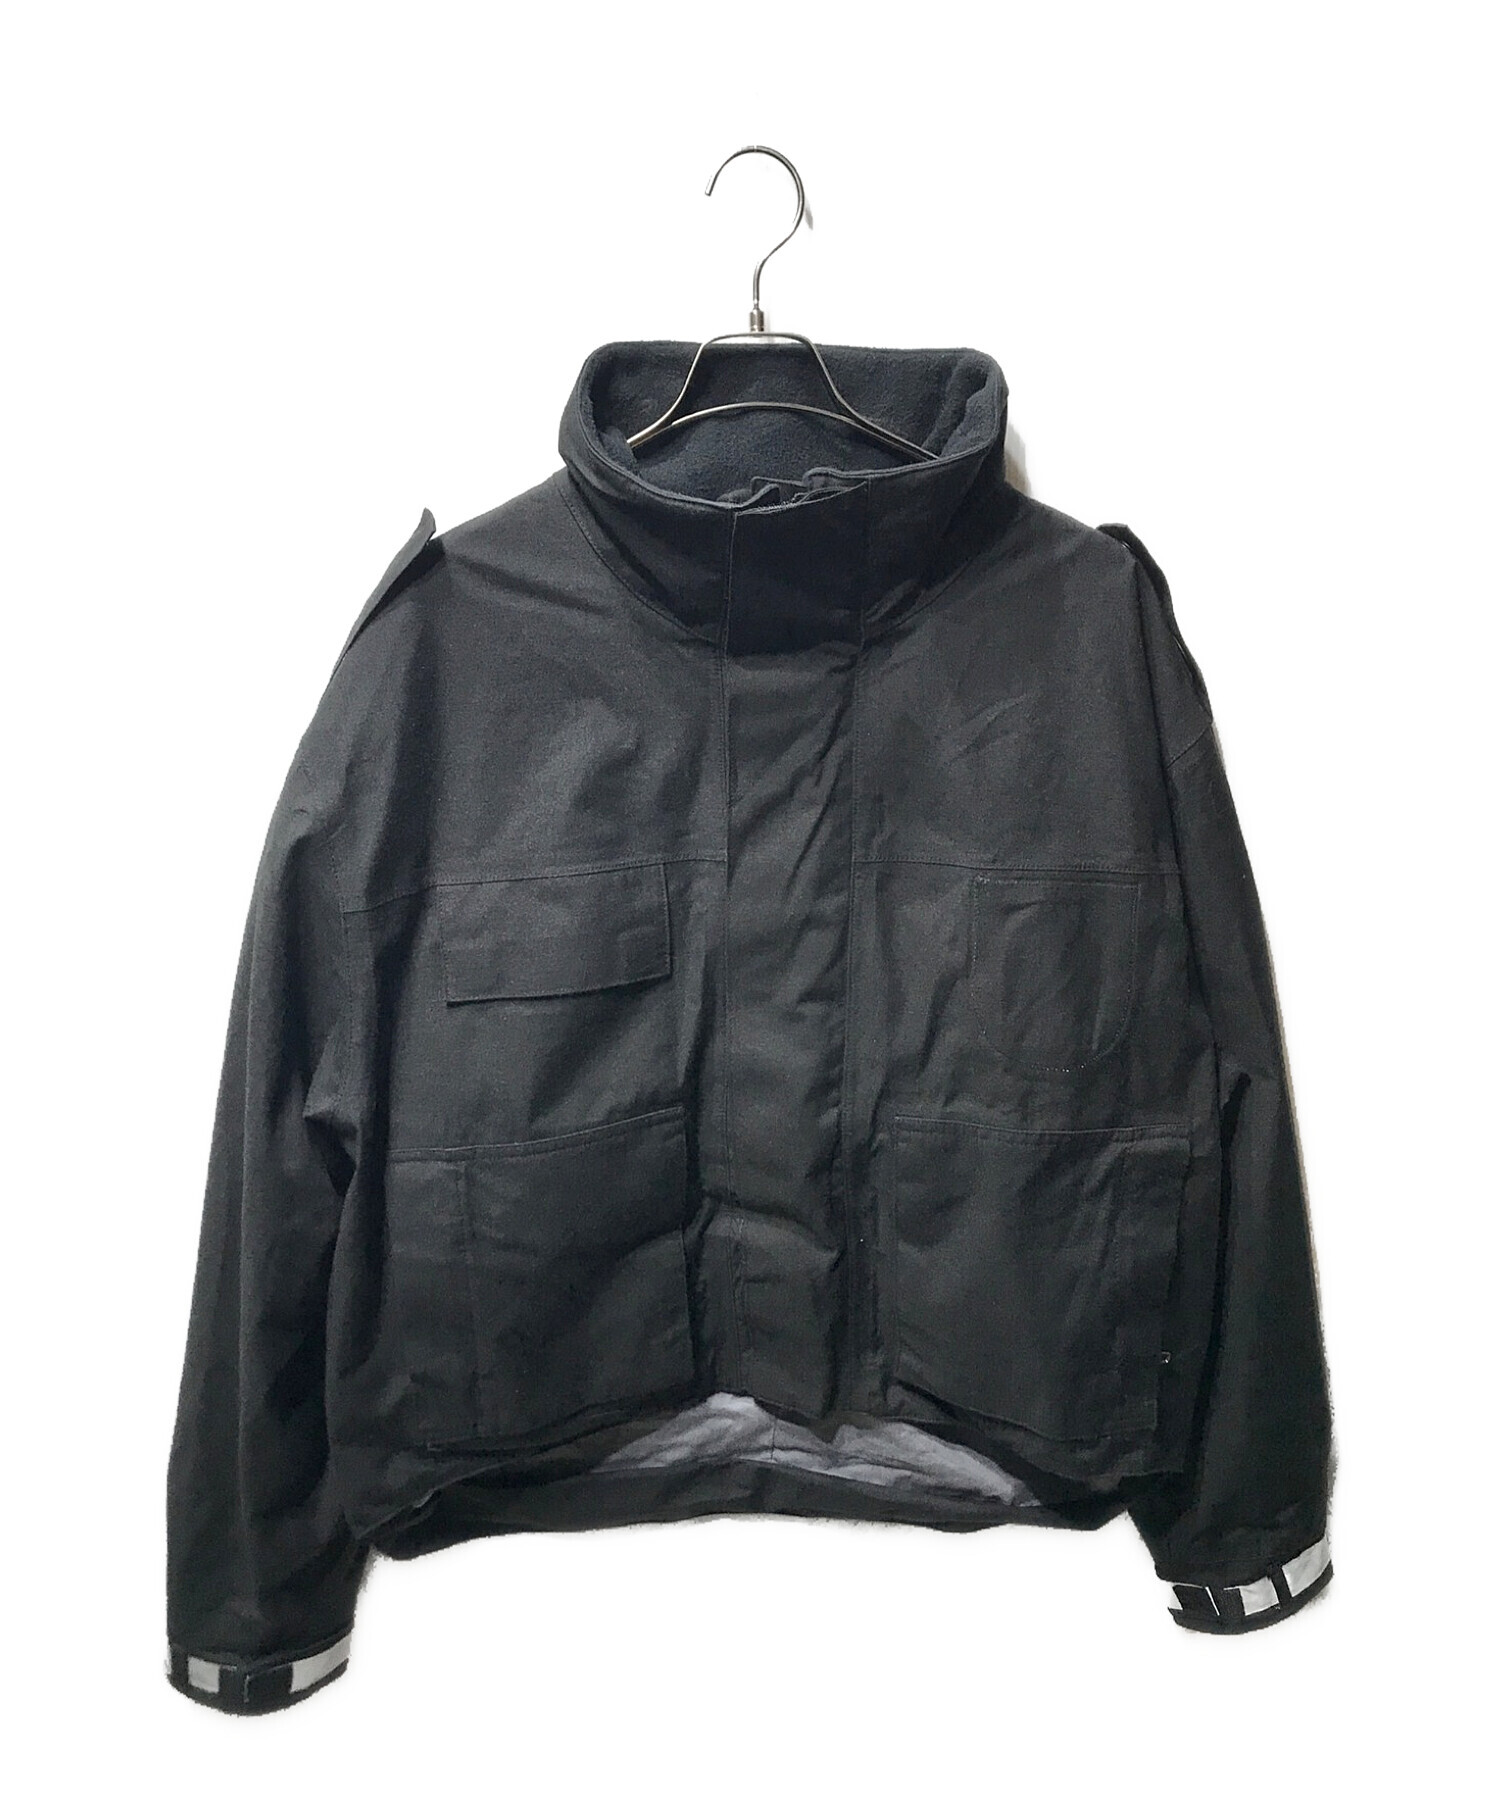 ノーブランド (ノーブランド) ポリスジャケット オランダ警察 ブラック サイズ:XL